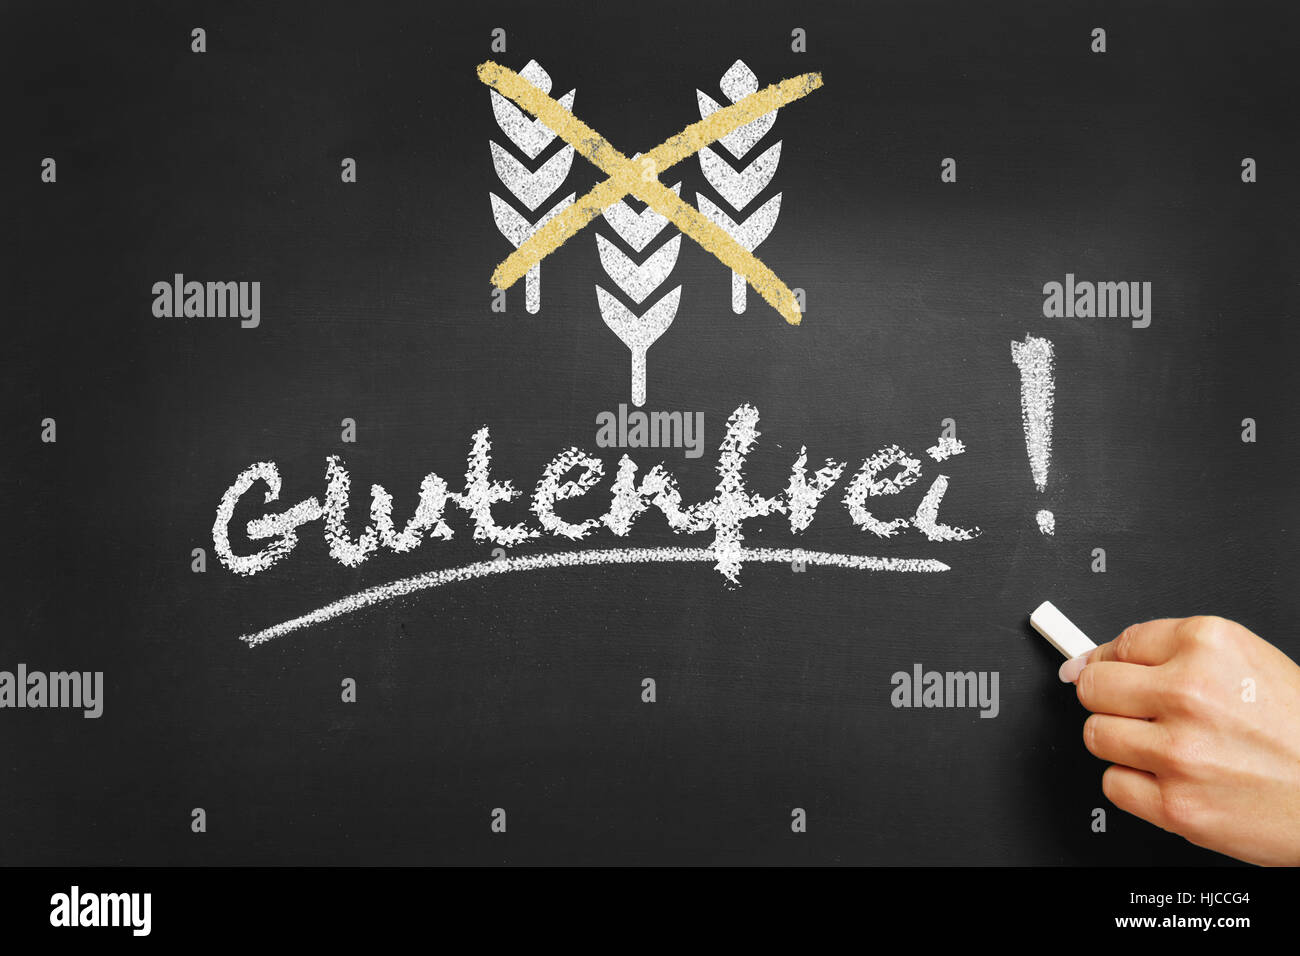 Hand writing in German 'Glutenfrei' (gluten free) on a chalkboard Stock Photo